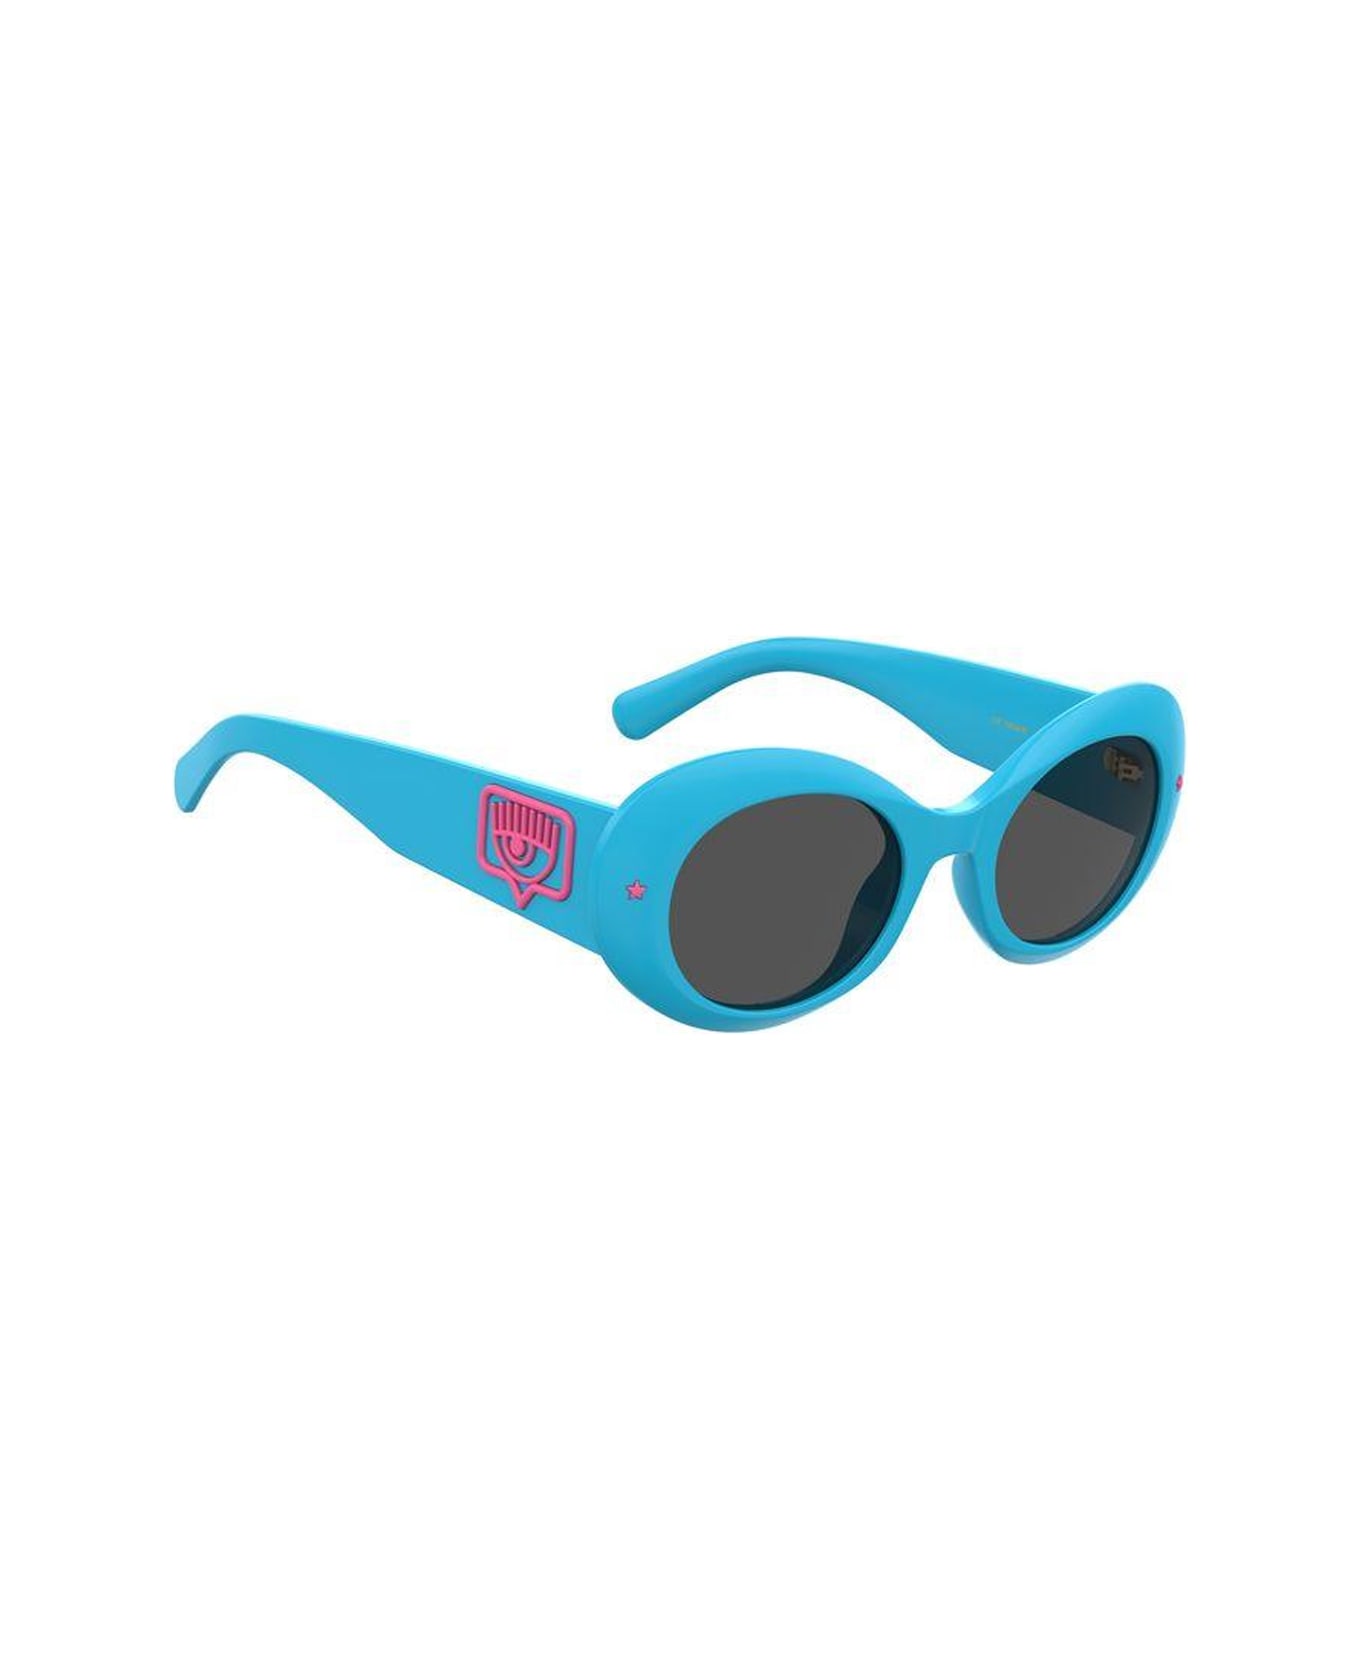 Chiara Ferragni 11em4bl0a - - Chiara Ferragni Sunglasses - Blu